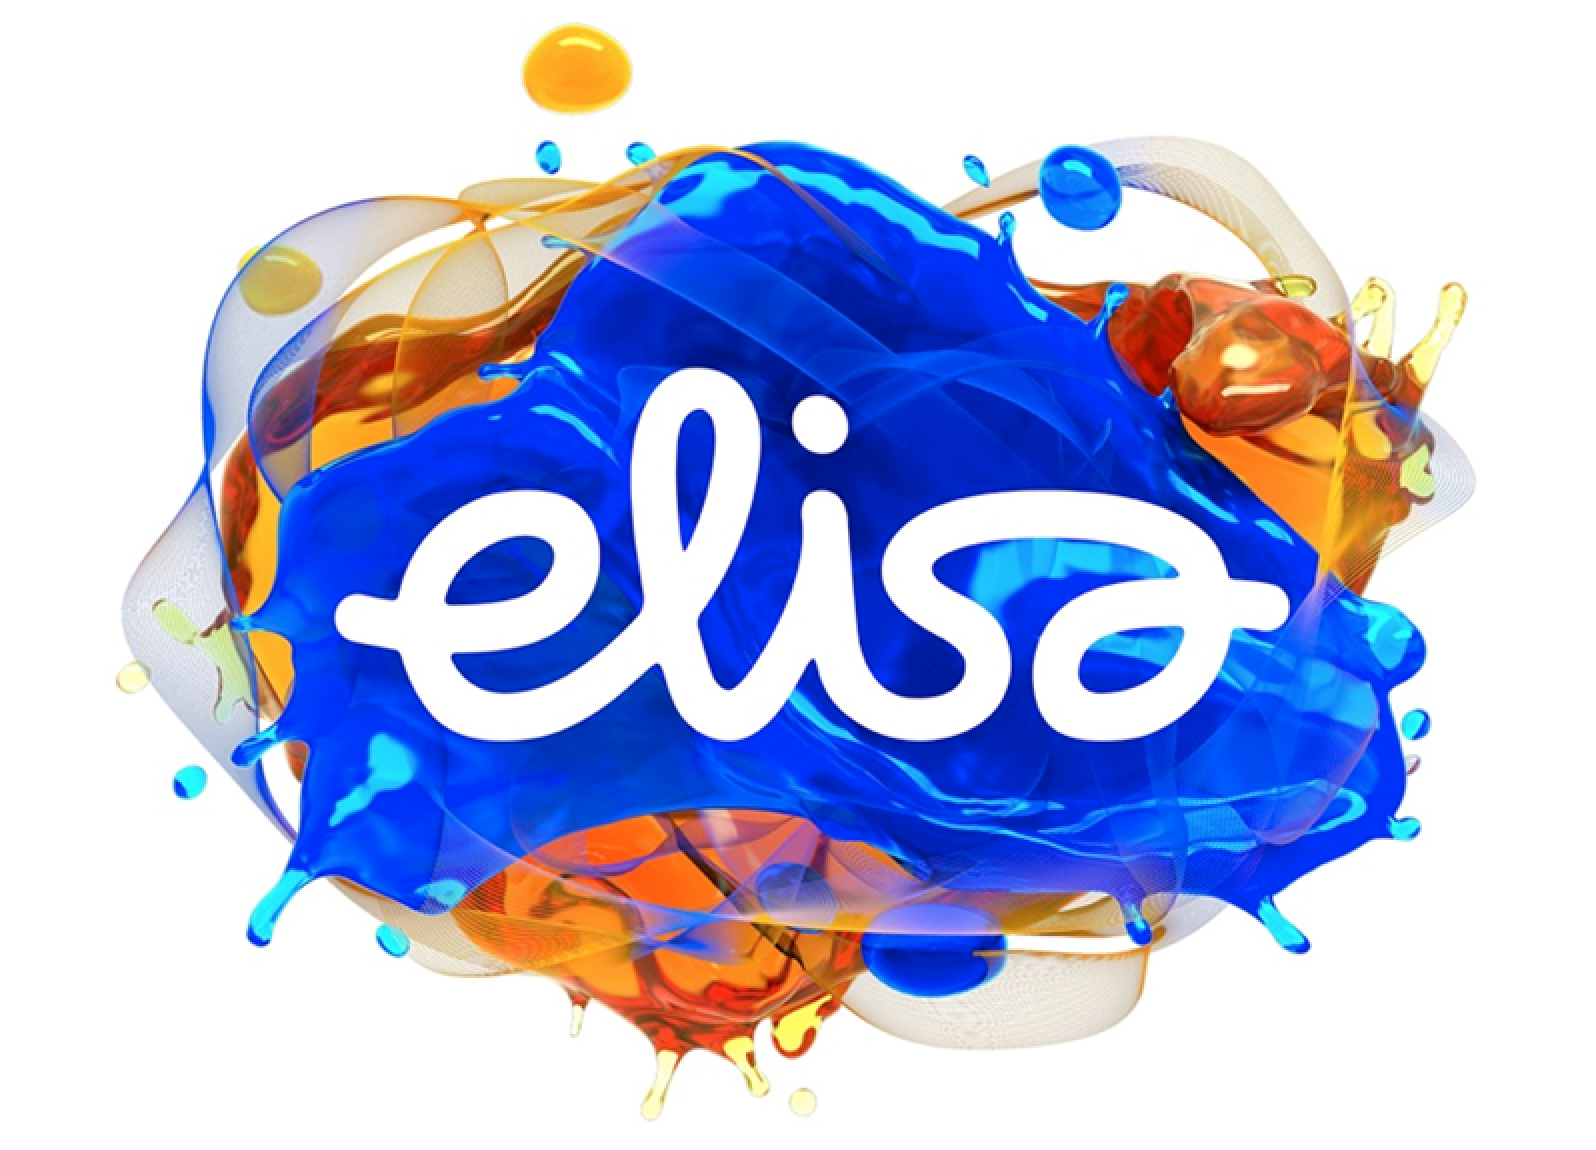 芬兰Elisa谈网络规划：用客户体验获取5G时代差异化竞争力